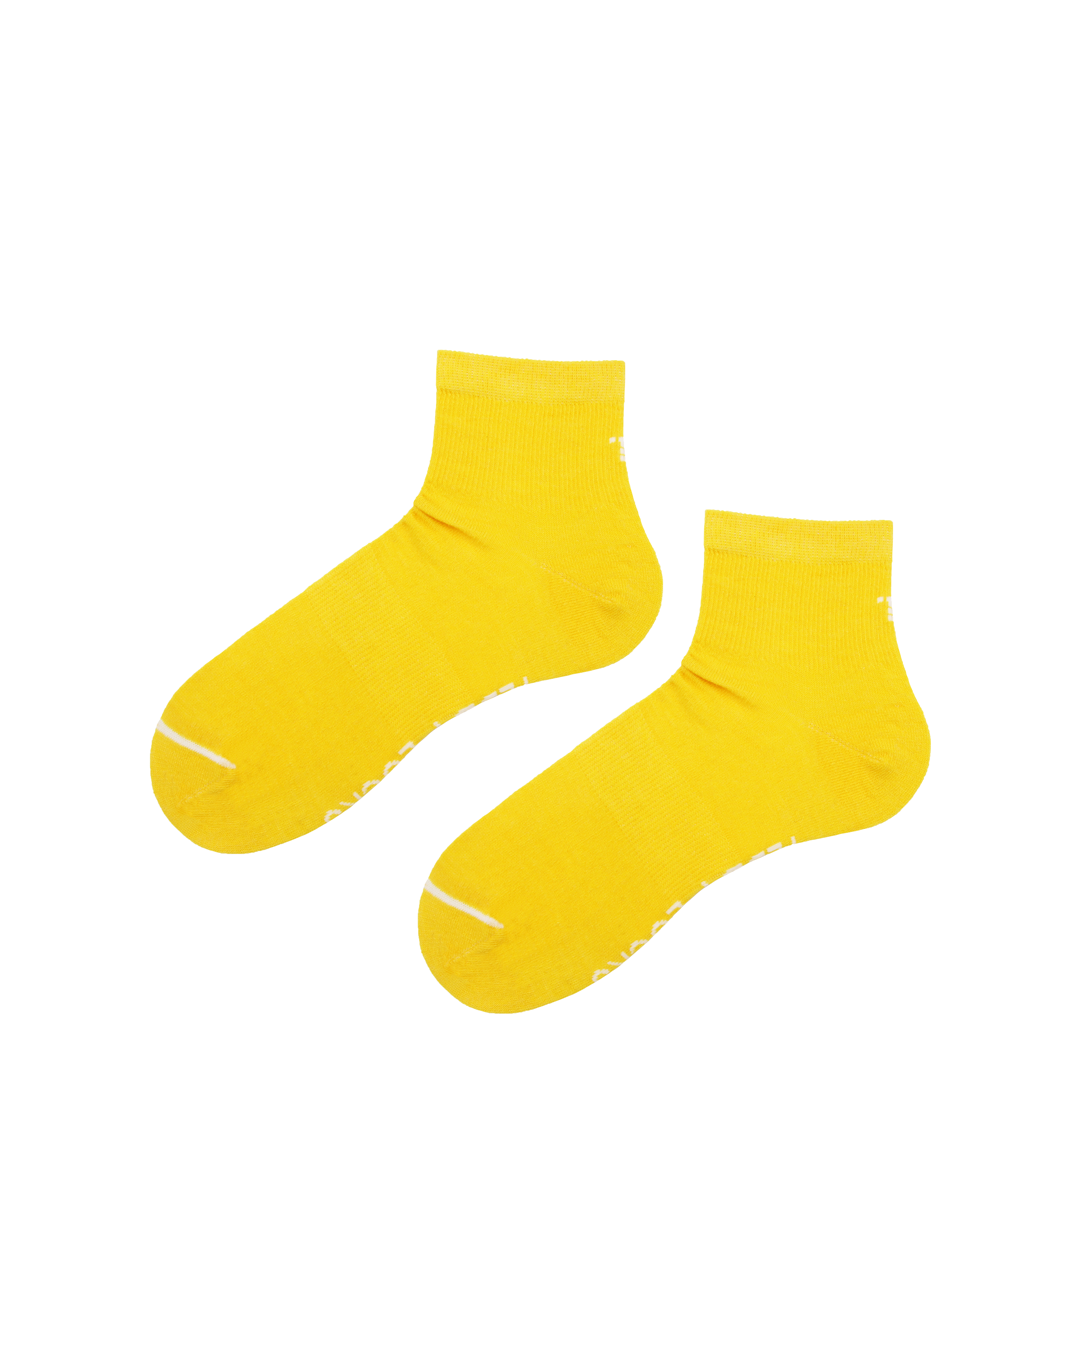 Sustainable quarter length socks for women. Fun colourful socks for men